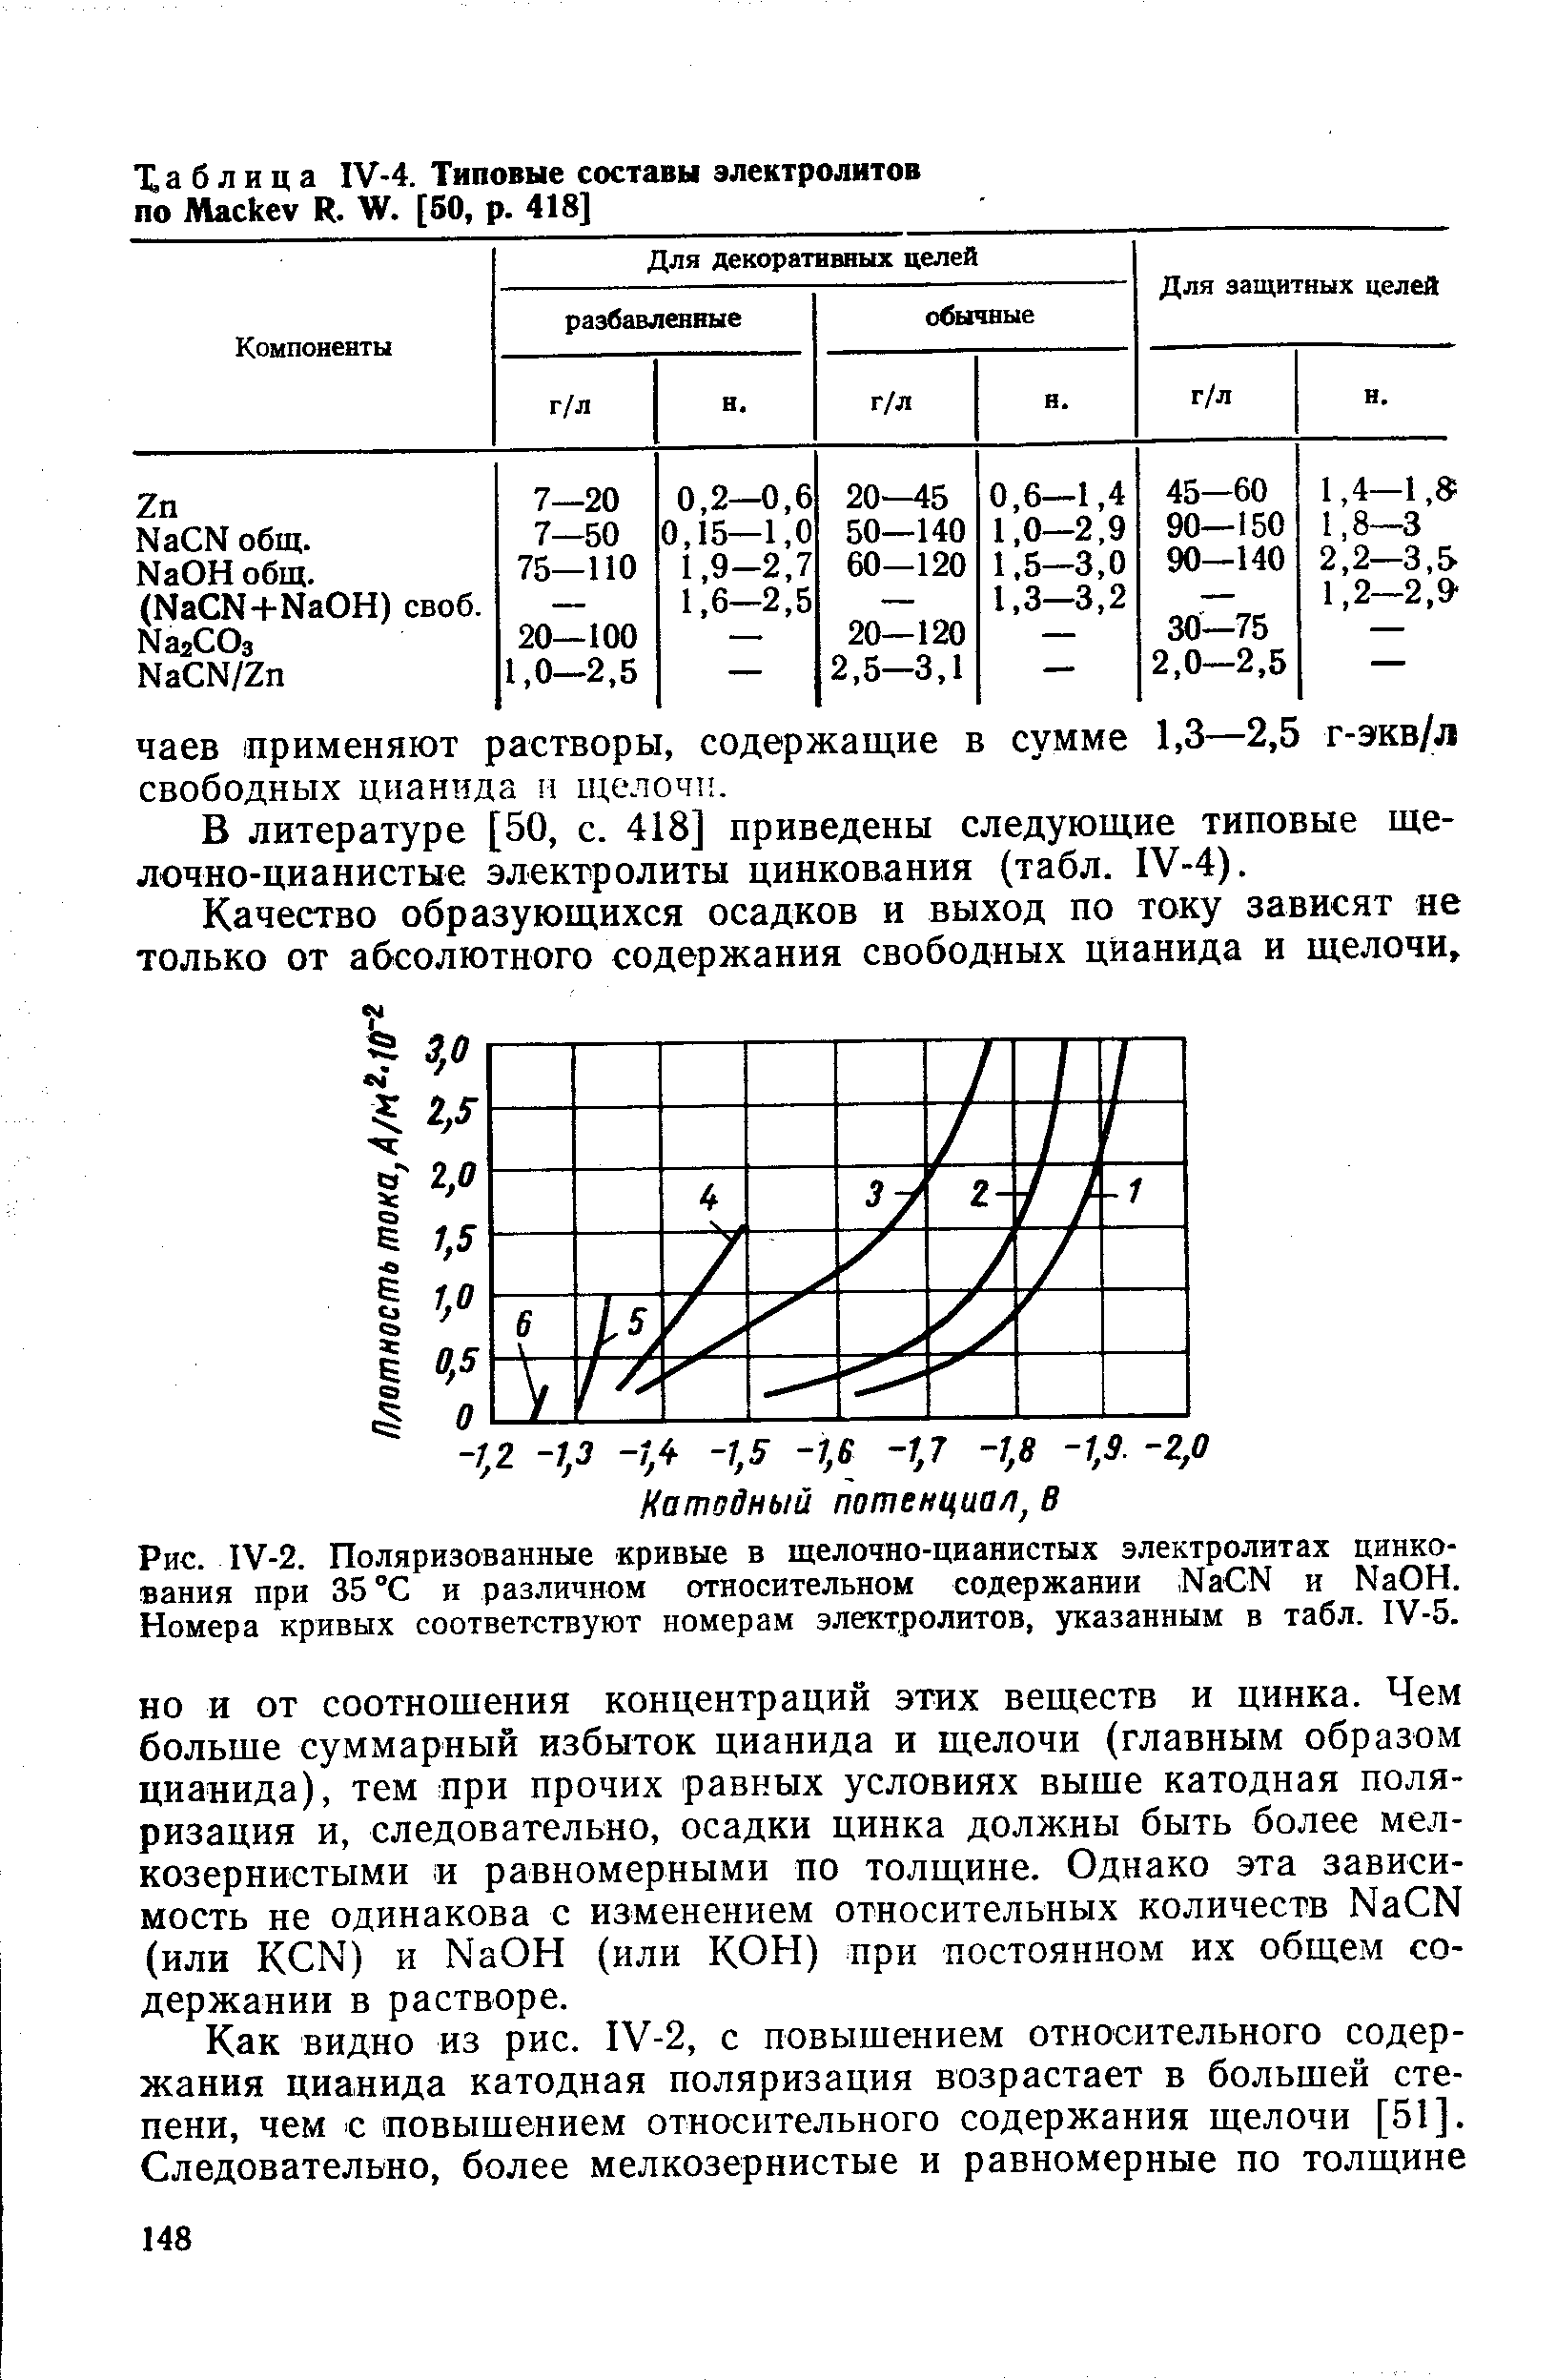 Рис. IV-2. Поляризованные кривые в щелочно-цианистых электролитах цинкования при 35 °С и различном относительном содержании, Na N и NaOH. Номера кривых соответствуют номерам электролитов, указанным в табл. IV-5.
